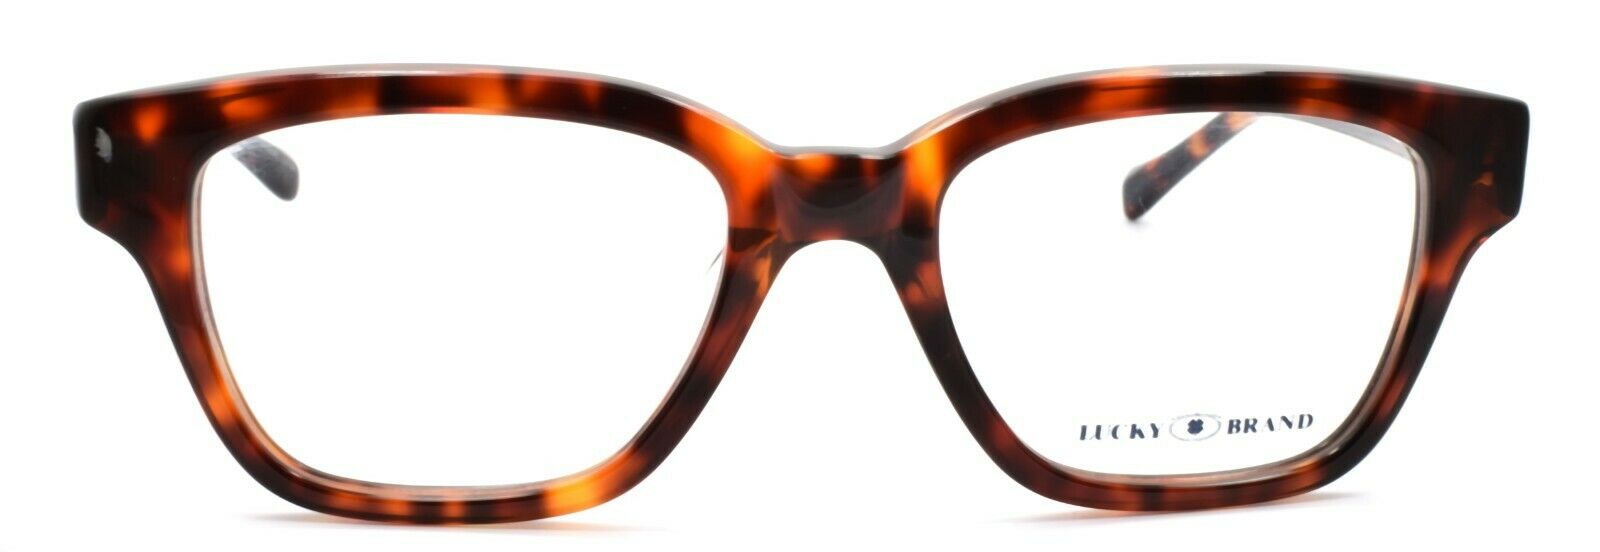 2-LUCKY BRAND Venturer UF Men's Eyeglasses Frames 50-19-145 Tortoise + CASE-751286249309-IKSpecs